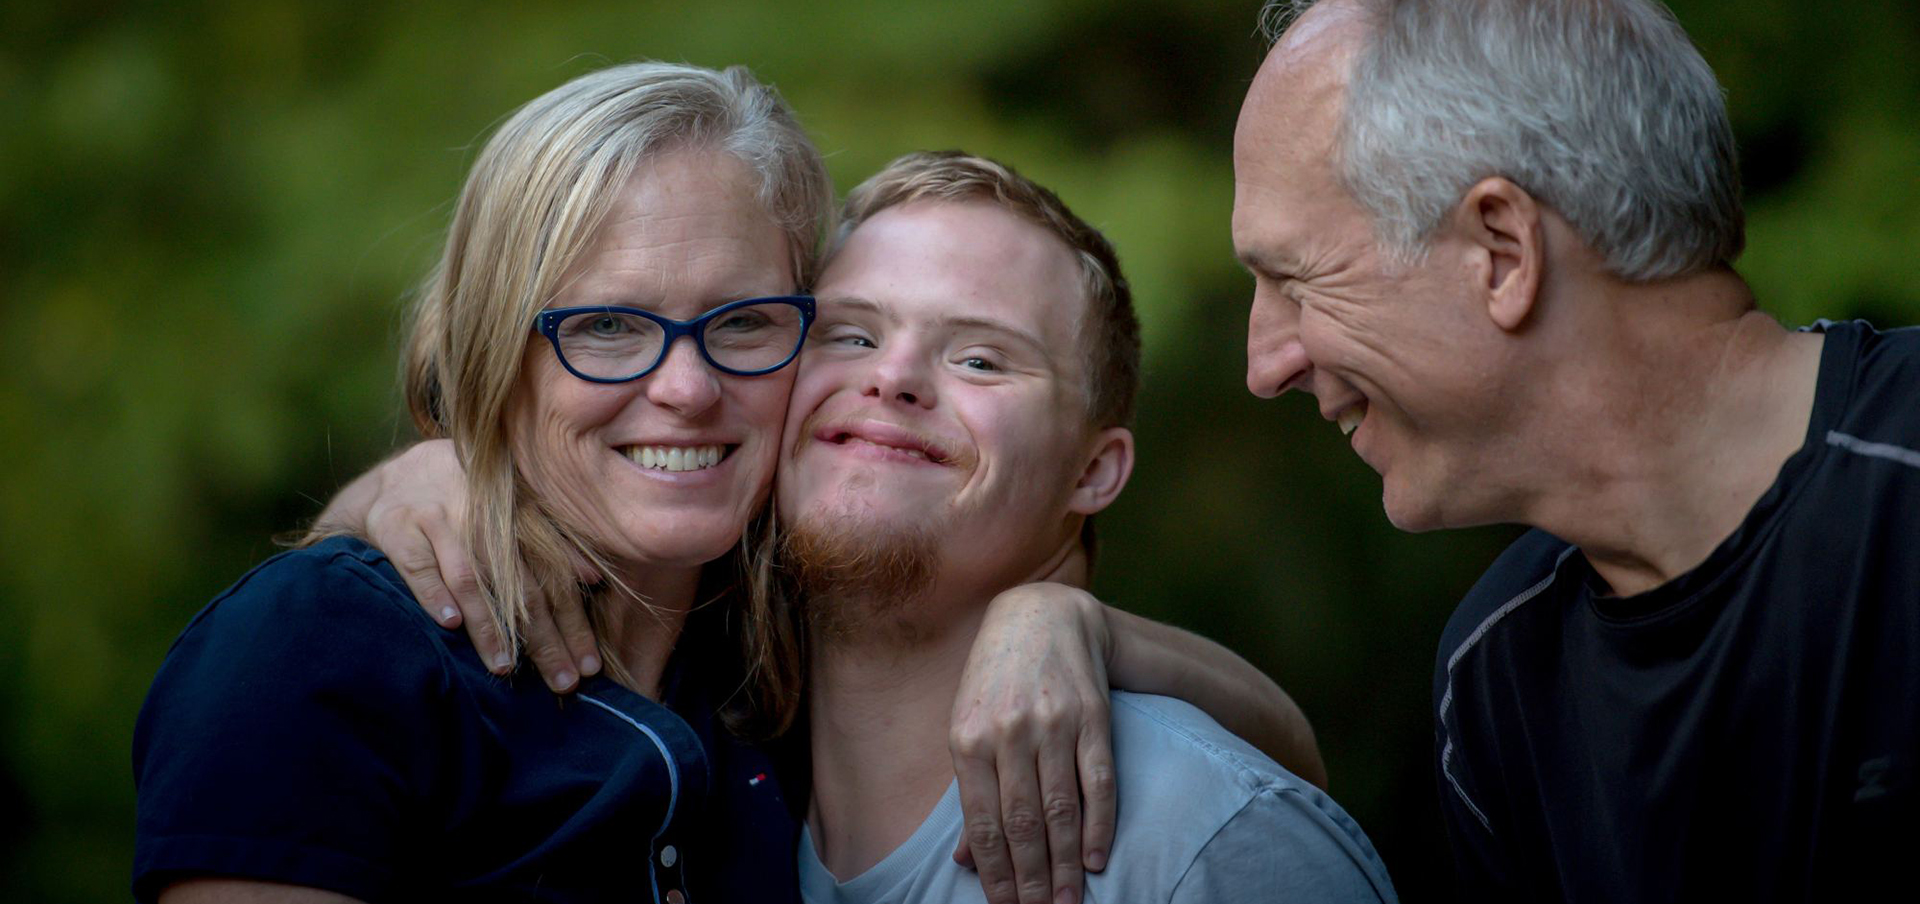 Eine dreiköpfige Familie lacht freundlich in die Kamera, sie nehmen ihren Sohn in den Arm, der an Trisomie 21 erkrankte. Der Mann links von ihm lächelt ihn freundlich an, während die Frau rechts von ihm ihn in den Arm nimmt.